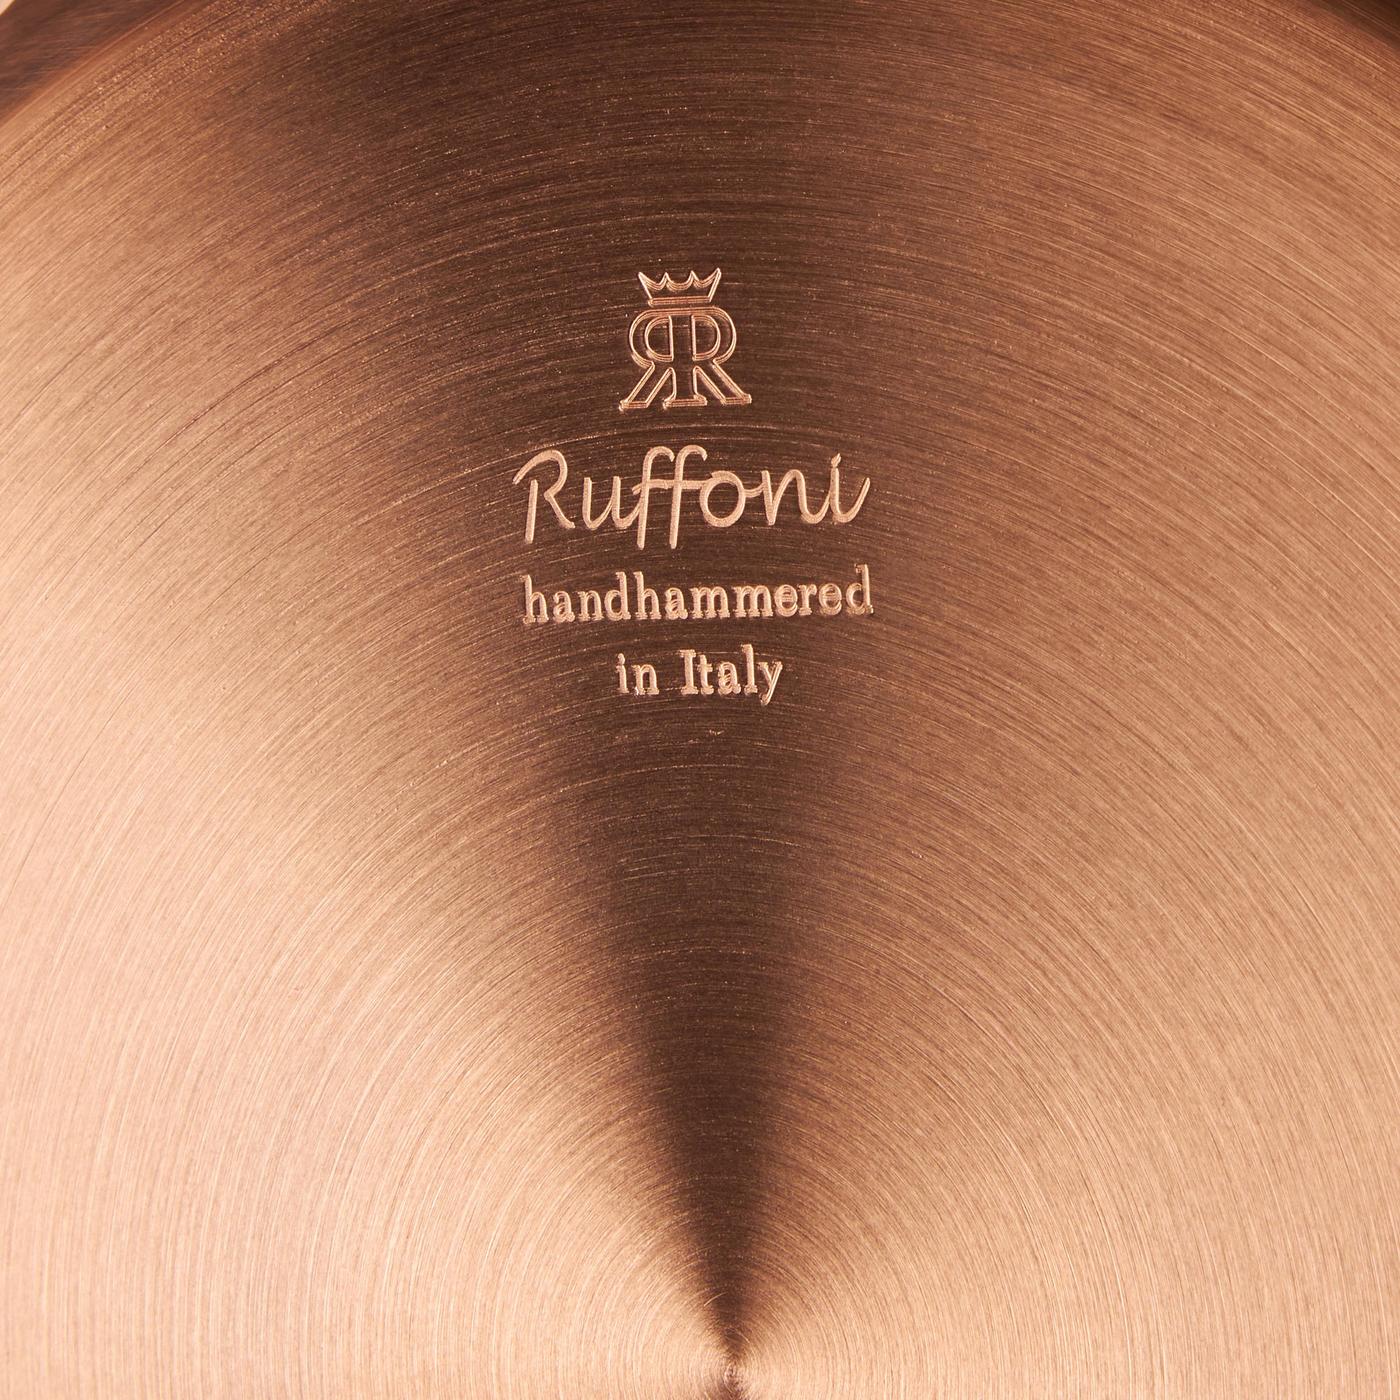 Ruffoni Opus Cupra Copper 3 qt. Covered Saute Pan-5